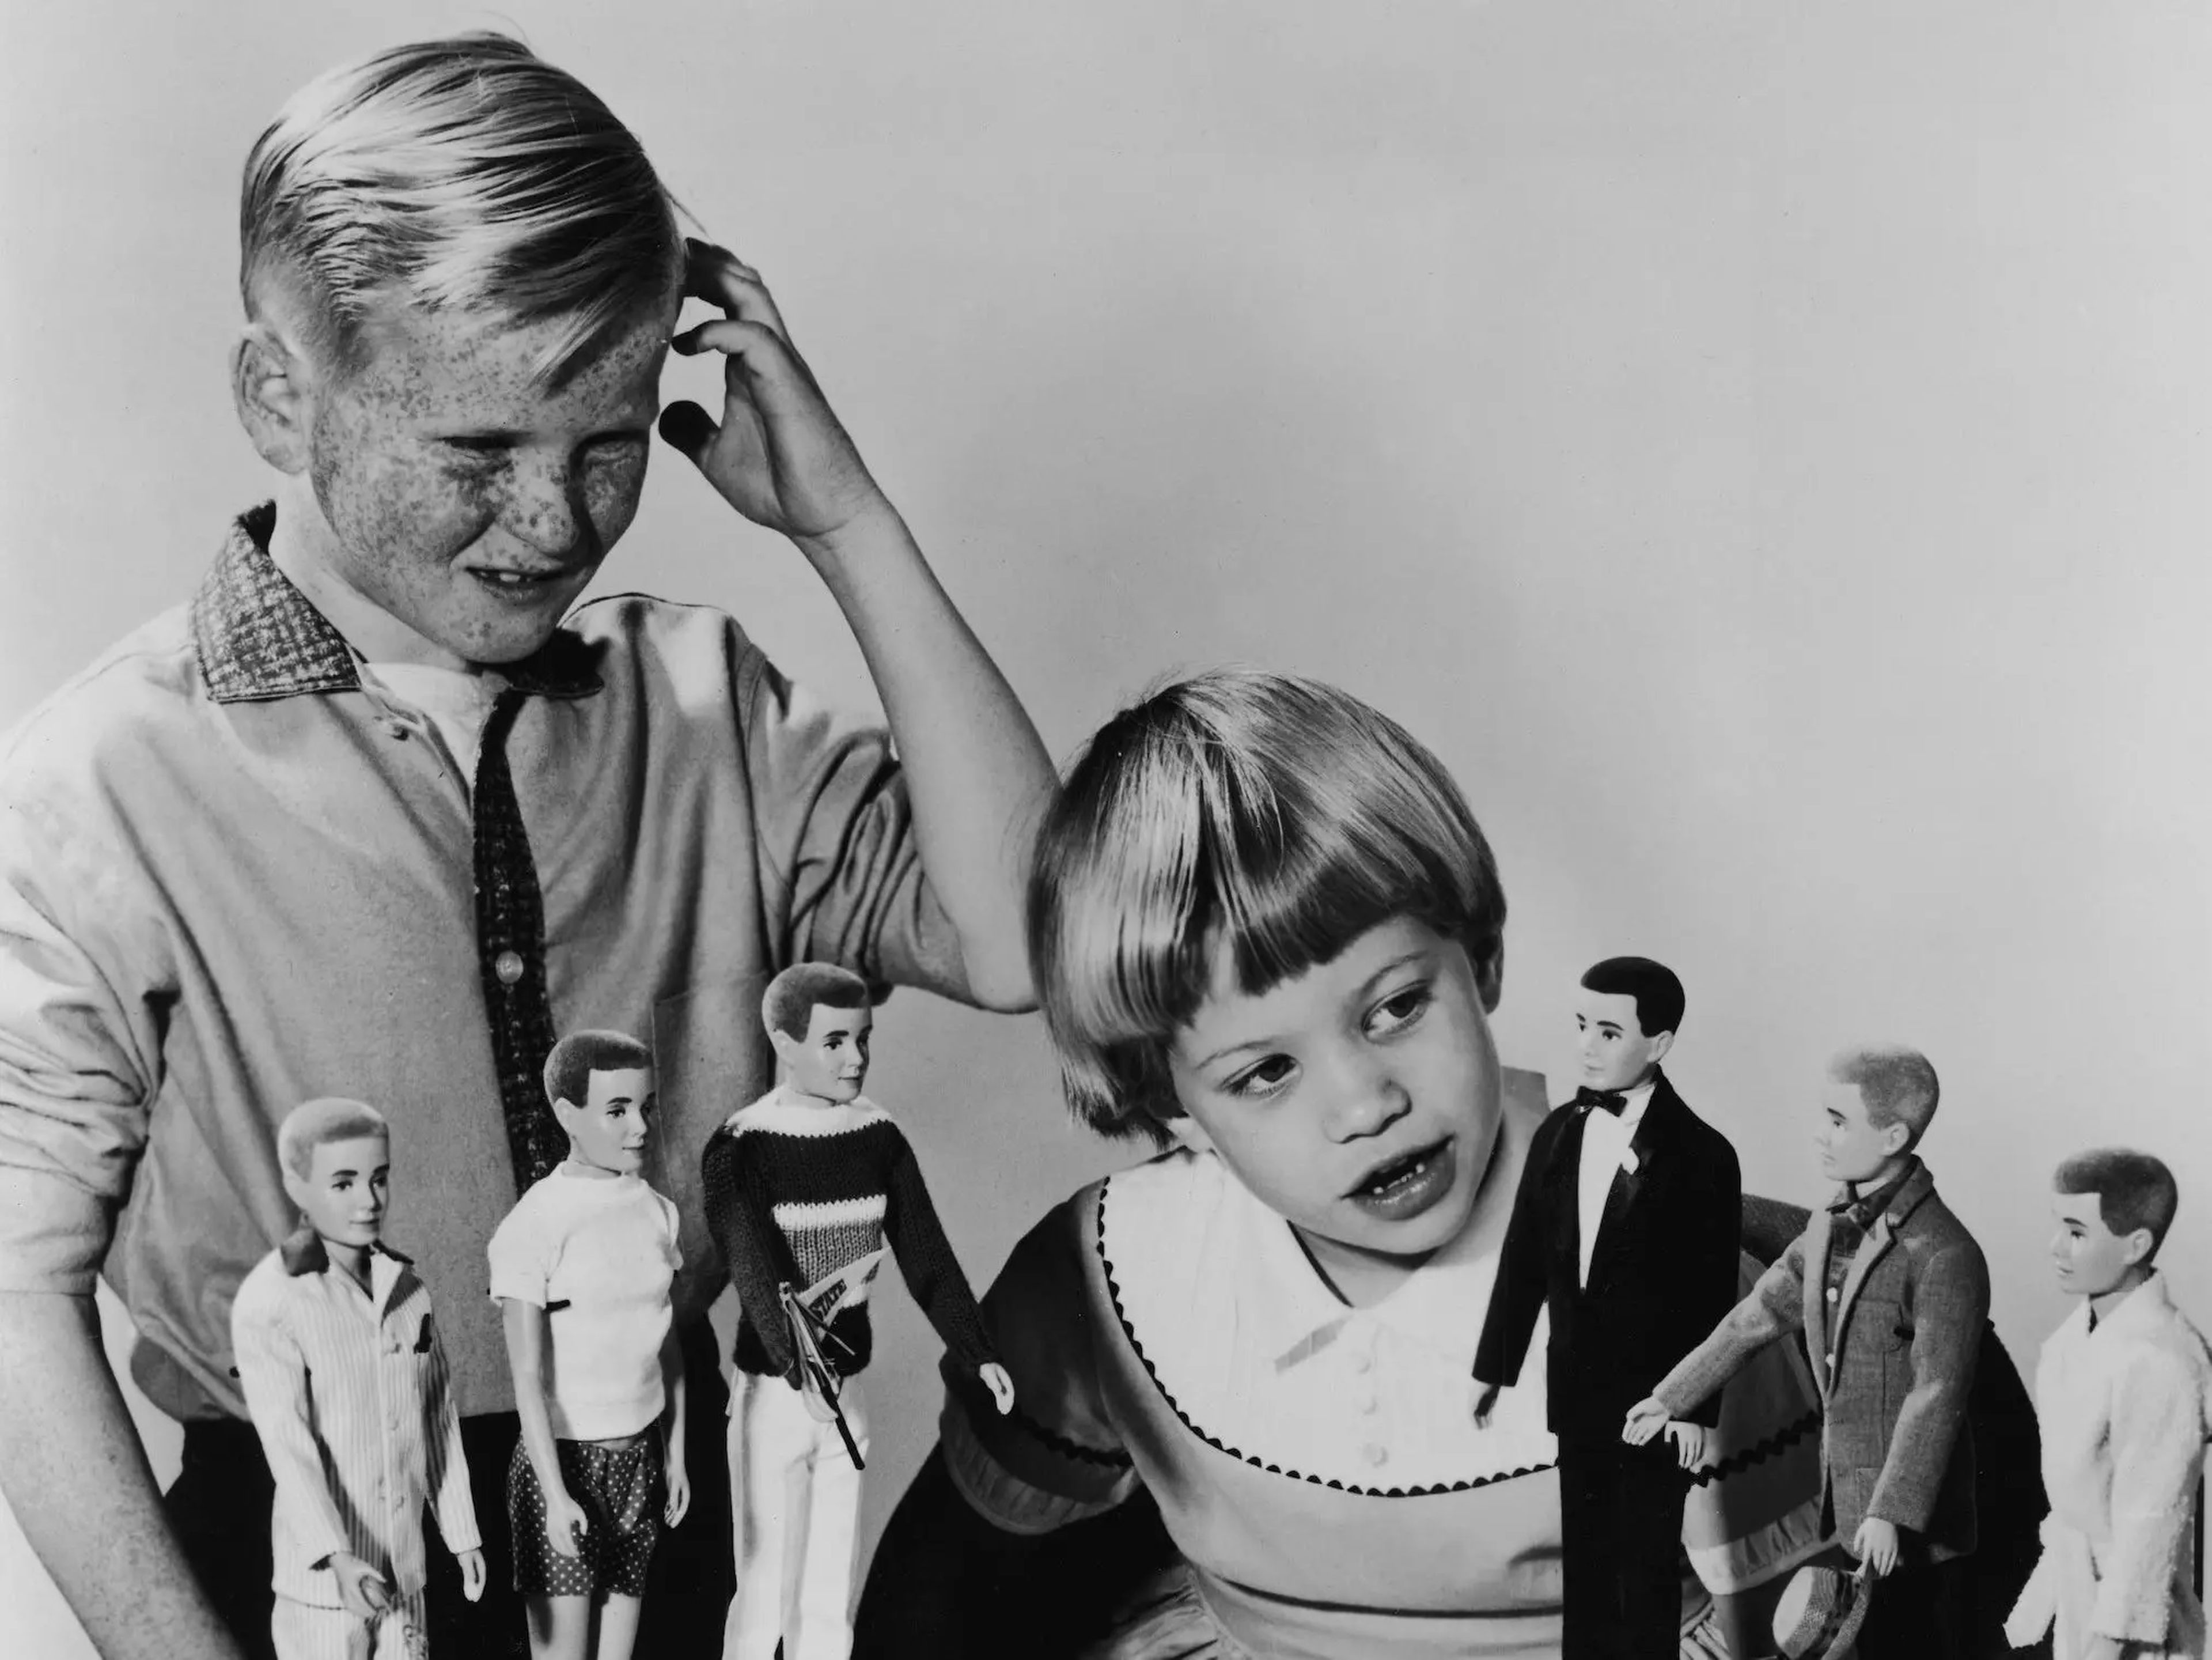 El niño se muestra confuso mientras una niña mira los muñecos Ken en 1961.